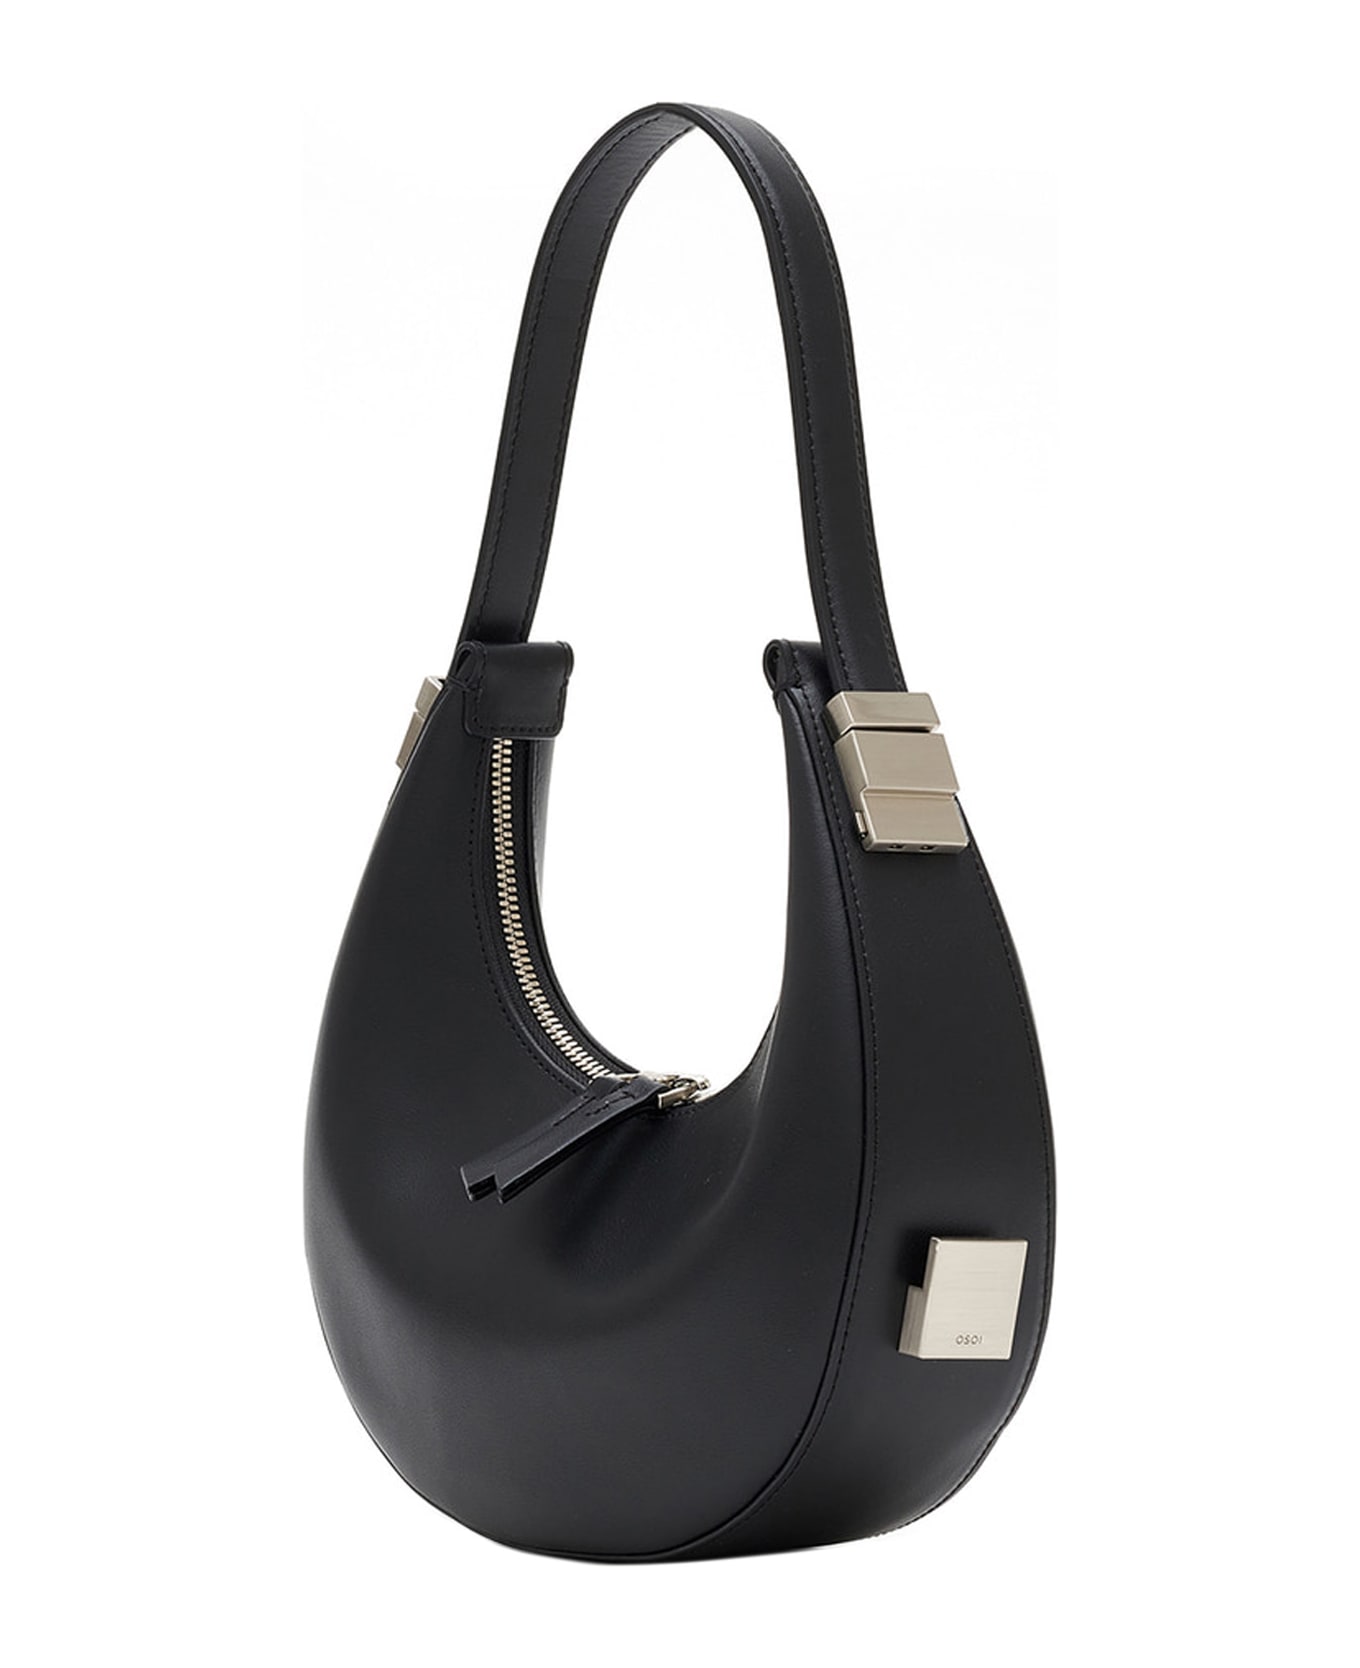 OSOI Toni Mini Shoulder Bag - Black